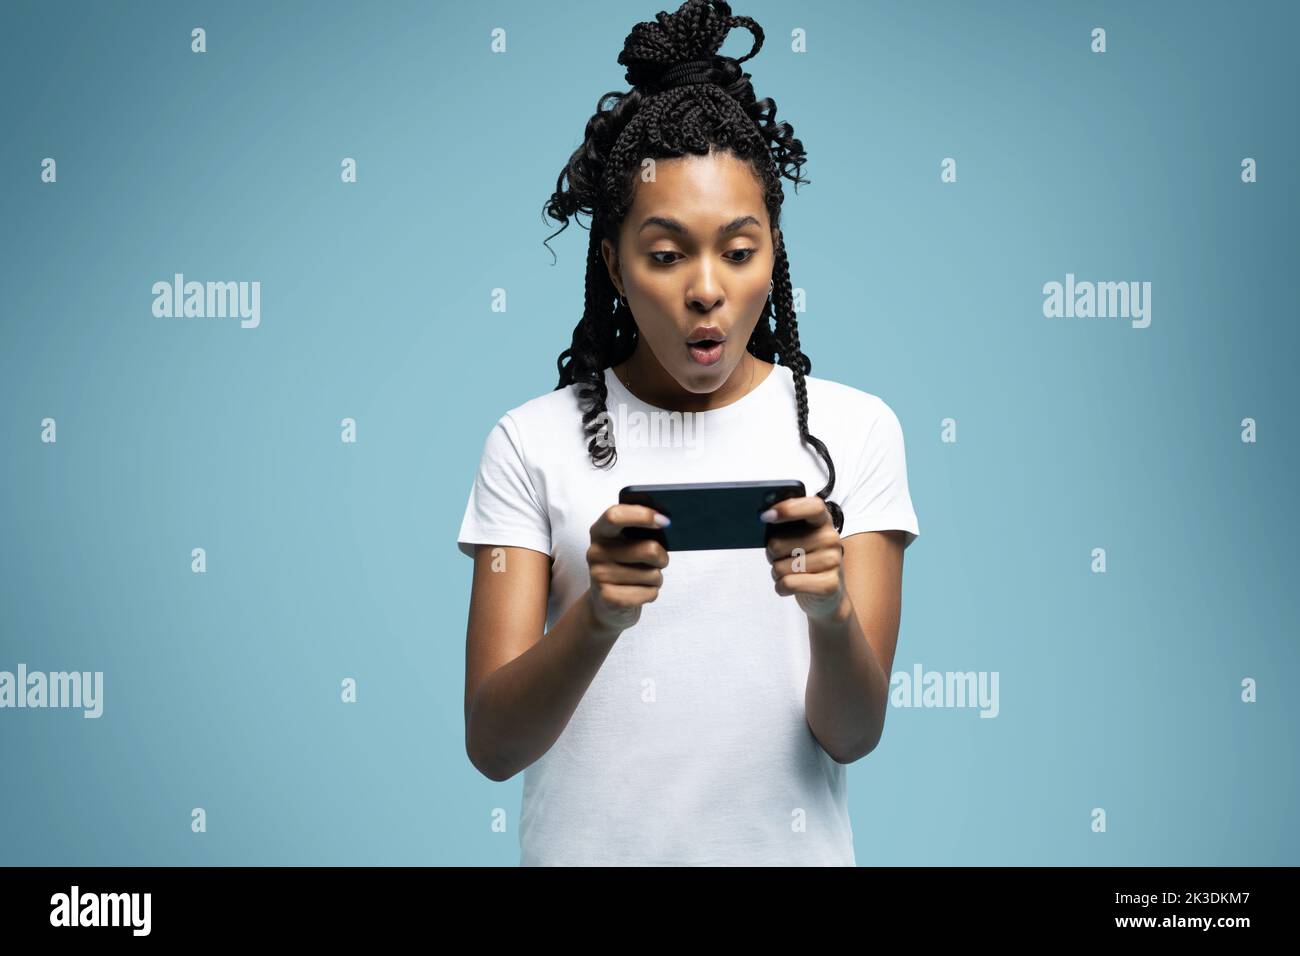 Positive lockige ethnische Frau verwendet Mobiltelefon prüft Nachrichten und liest Nachrichten hält moderne zelluläre in Händen sieht mit neugierigen glücklichen Ausdruck Stockfoto